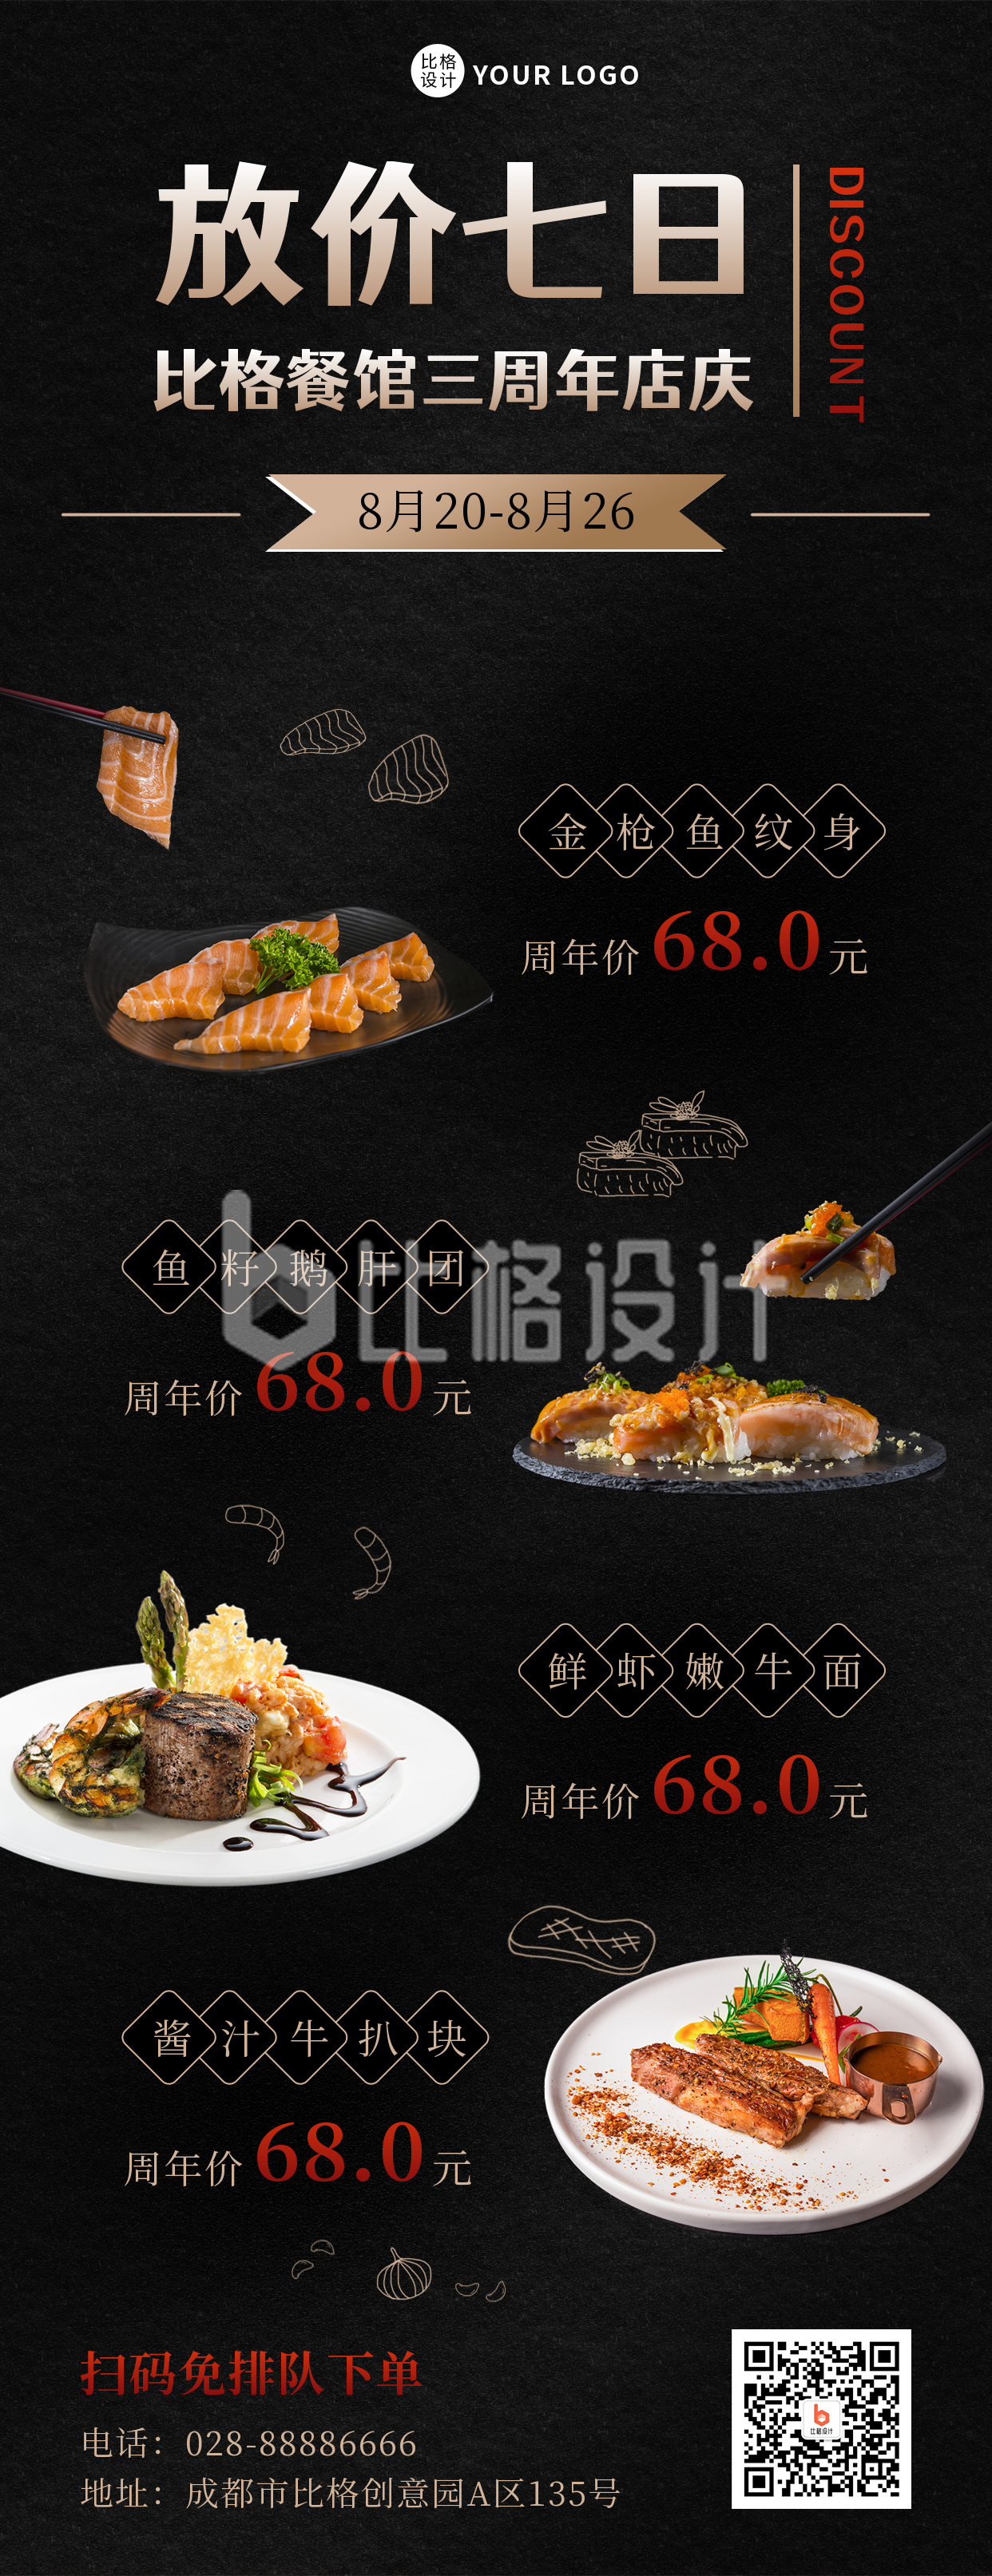 扁平大气菜品展示餐饮宣传长图海报